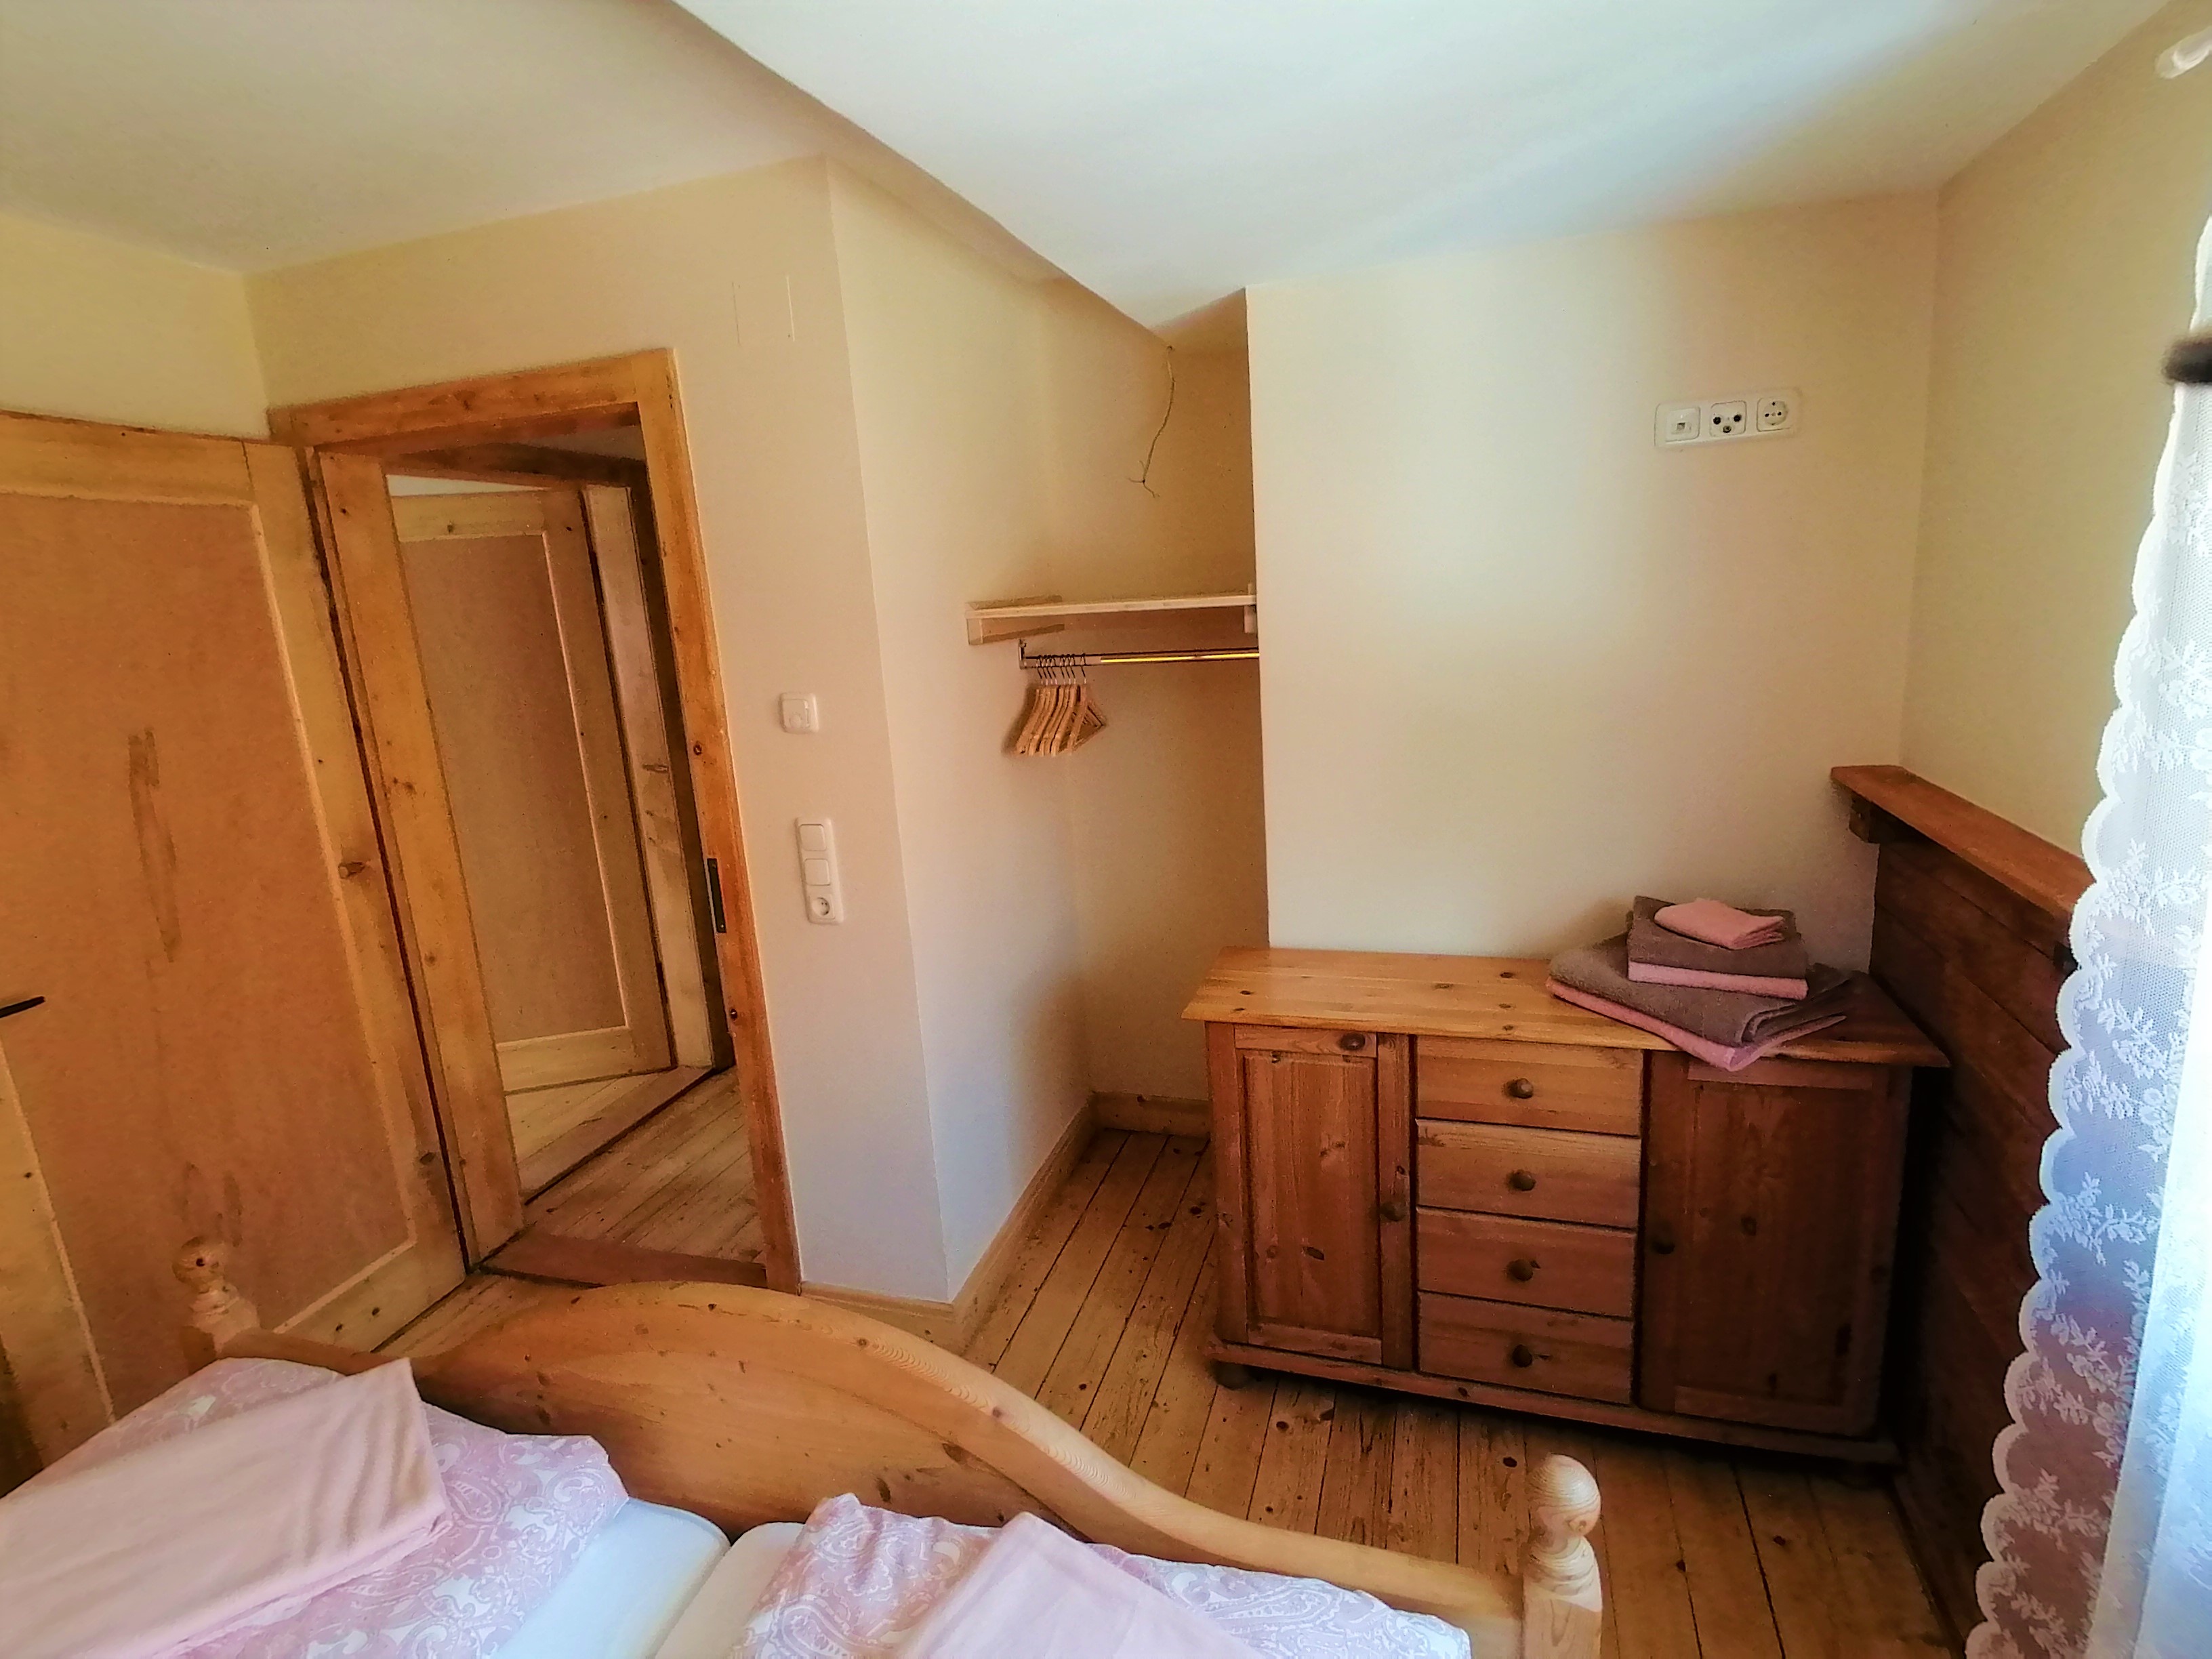 [:de]Schlafzimmer mit Holzfußboden und Holztüren[:pl]Fewo_44_Schlafzimmer-mit-Holzfußboden-und-Holztüren[:]